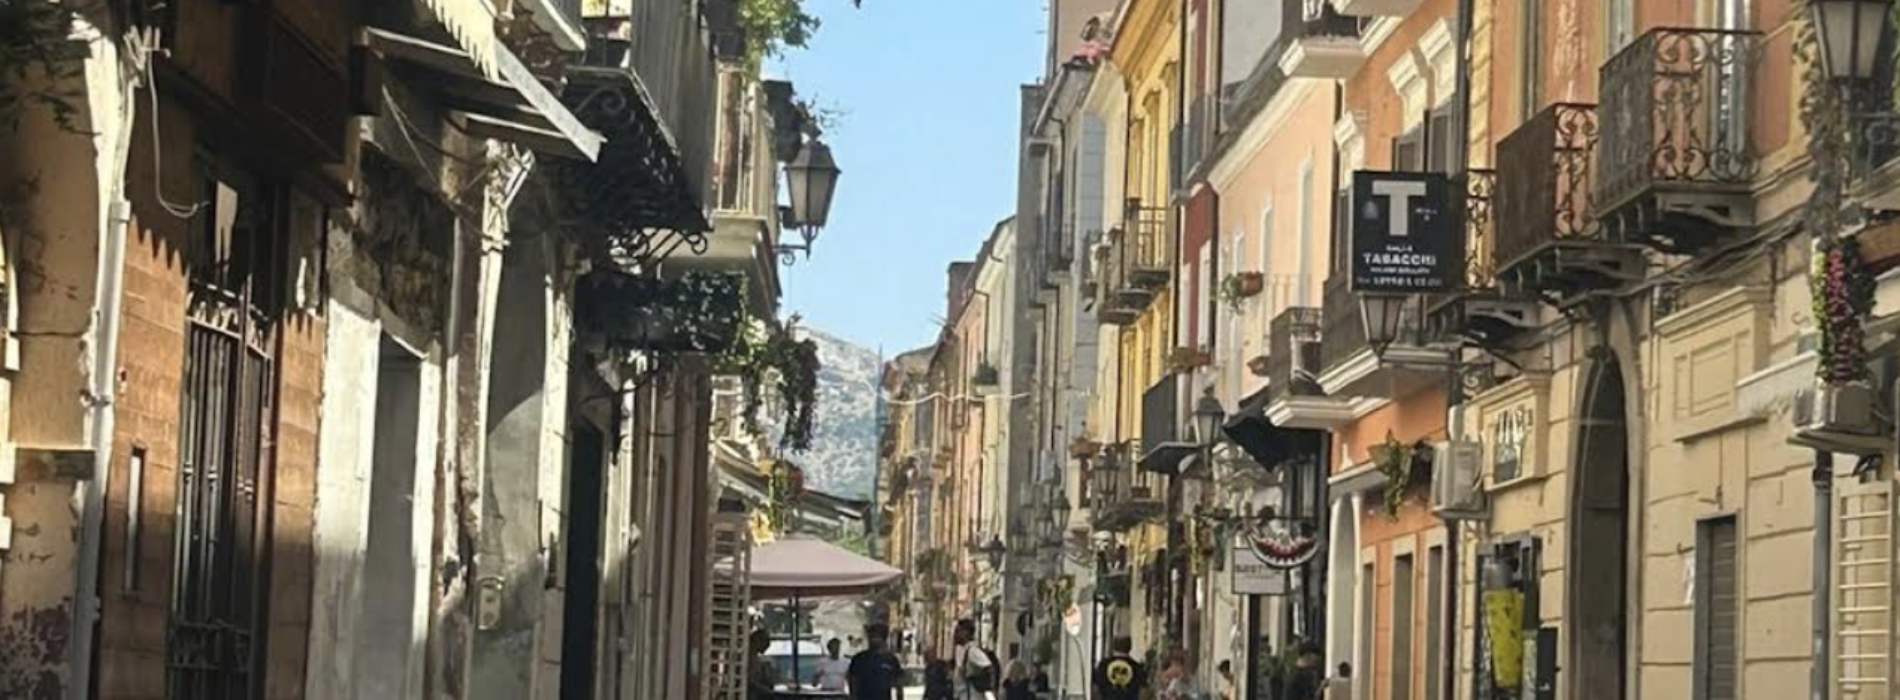 Caserta, Via San Carlo messa in sicurezza, riaperta la strada